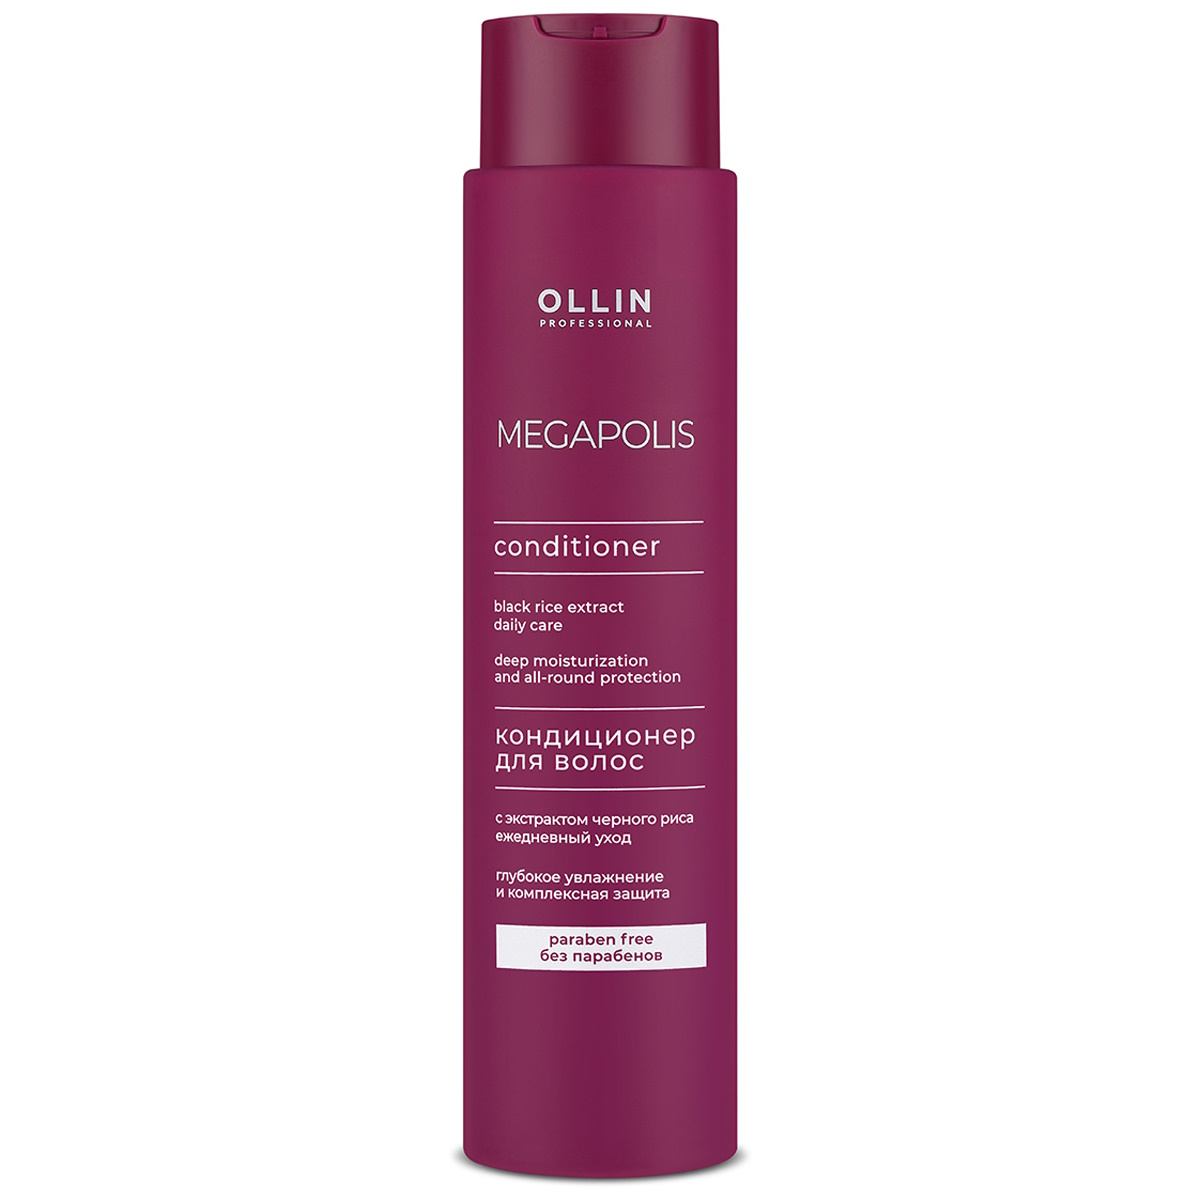 Кондиционер OLLIN PROFESSIONAL Megapolis для волос восстановление черный рис, 400 мл ollin megapolis интенсивный крем для волос на основе черного риса 250 мл